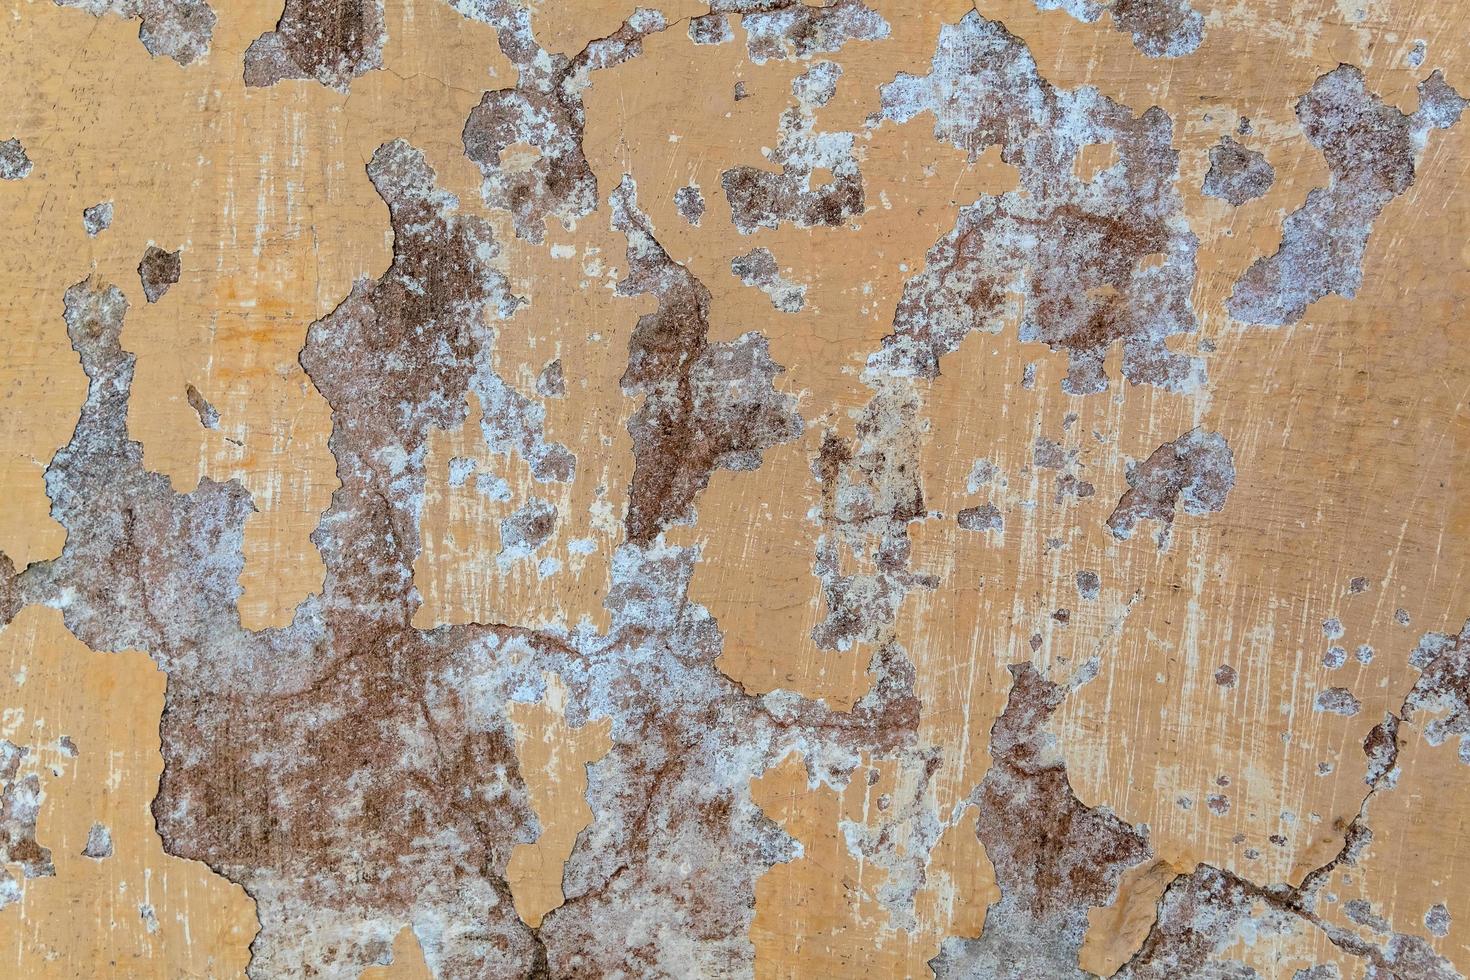 pinte o fundo da textura da parede de concreto de rachadura. foto